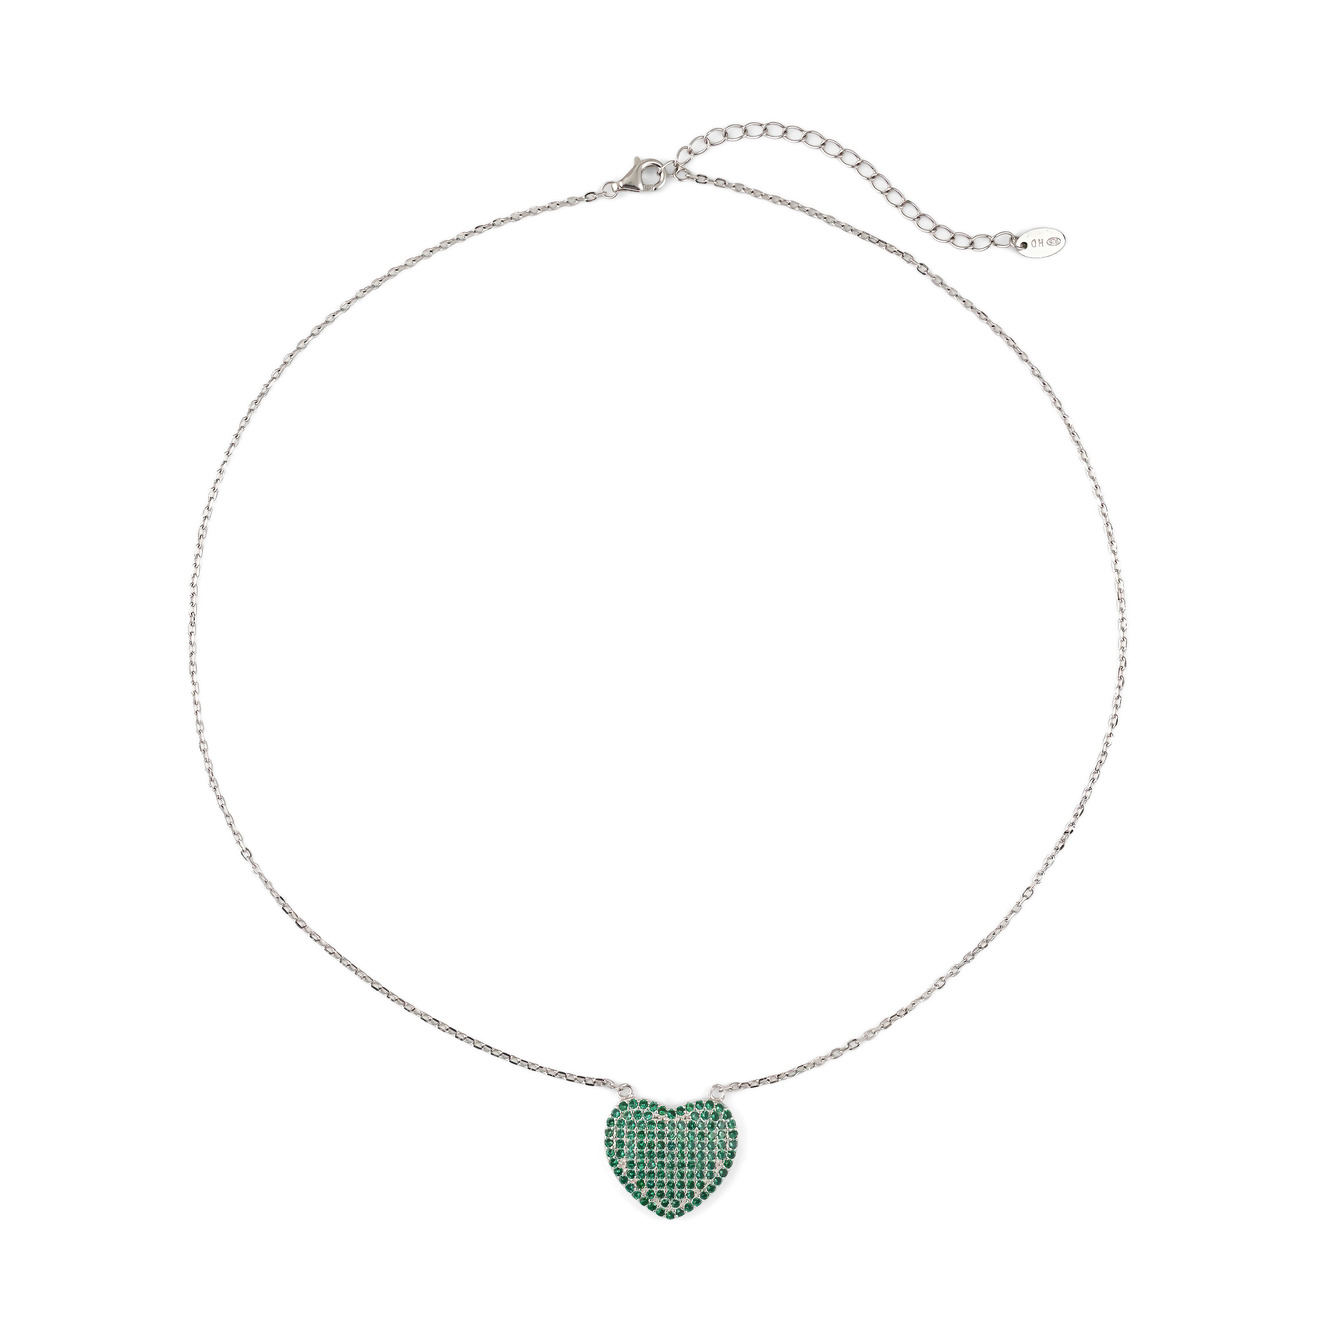 skye позолоченная цепь тонда из серебра SKYE Колье-цепь из серебра с крупным сердцем из зеленых кристаллов